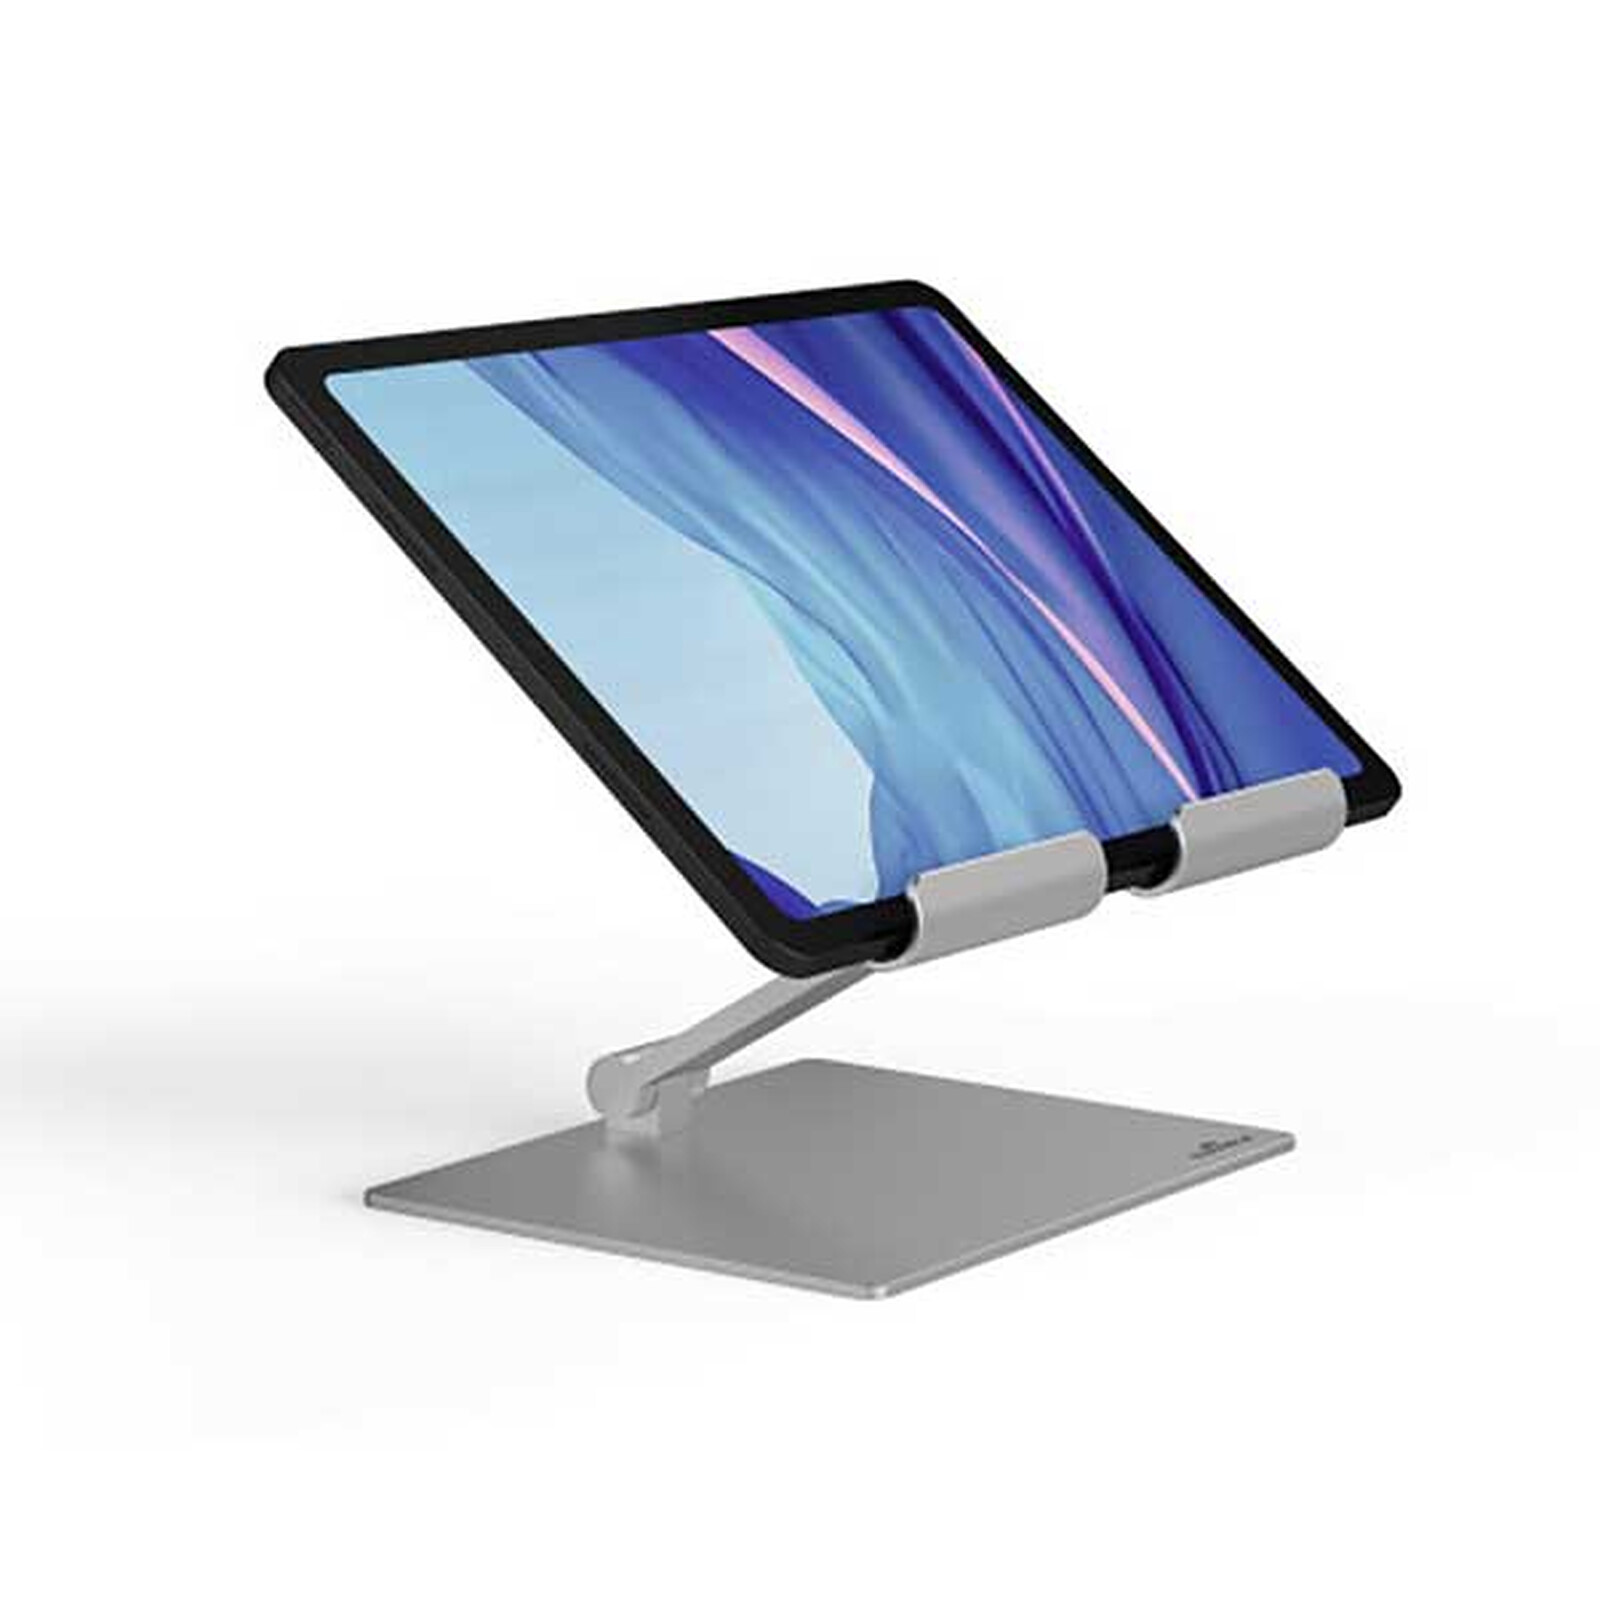 Soporte de Mesa/Pared para Tablet iPad Pro 12.9- Generación 3, negro